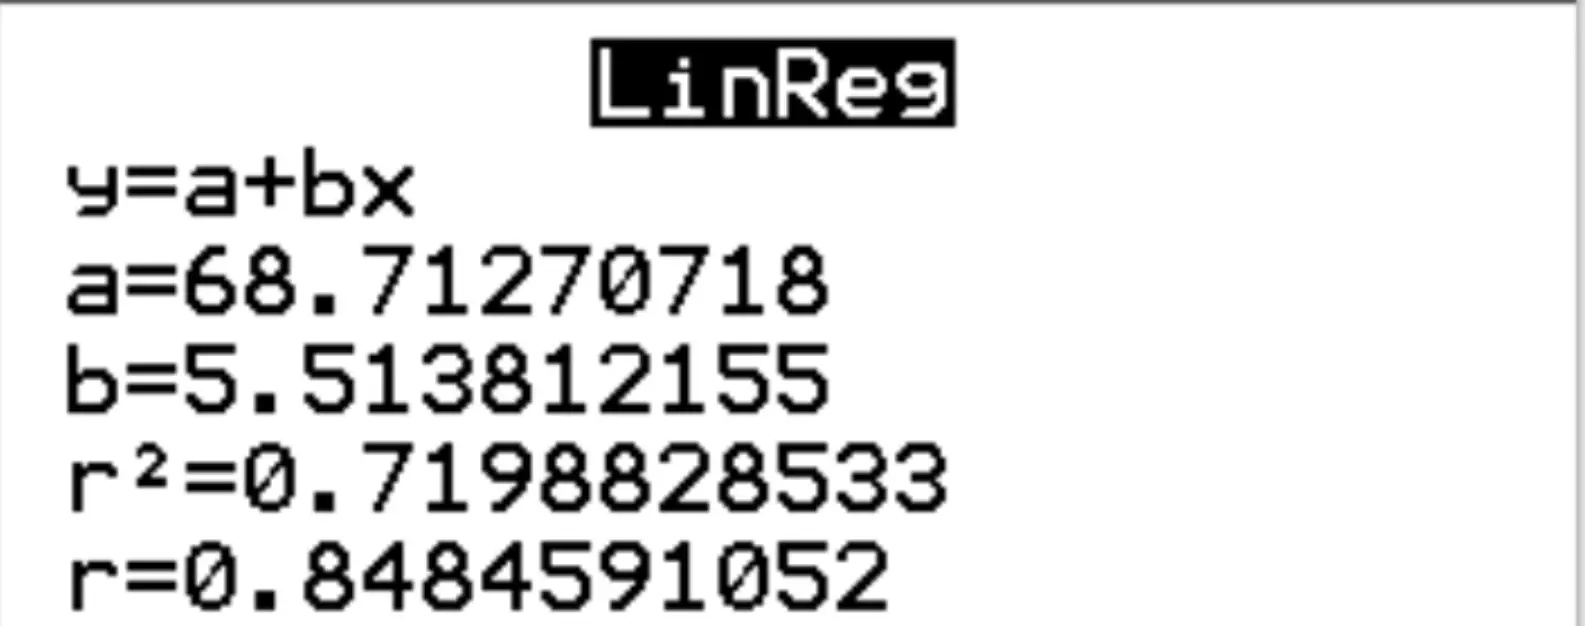 Output di regressione lineare su una calcolatrice TI-84